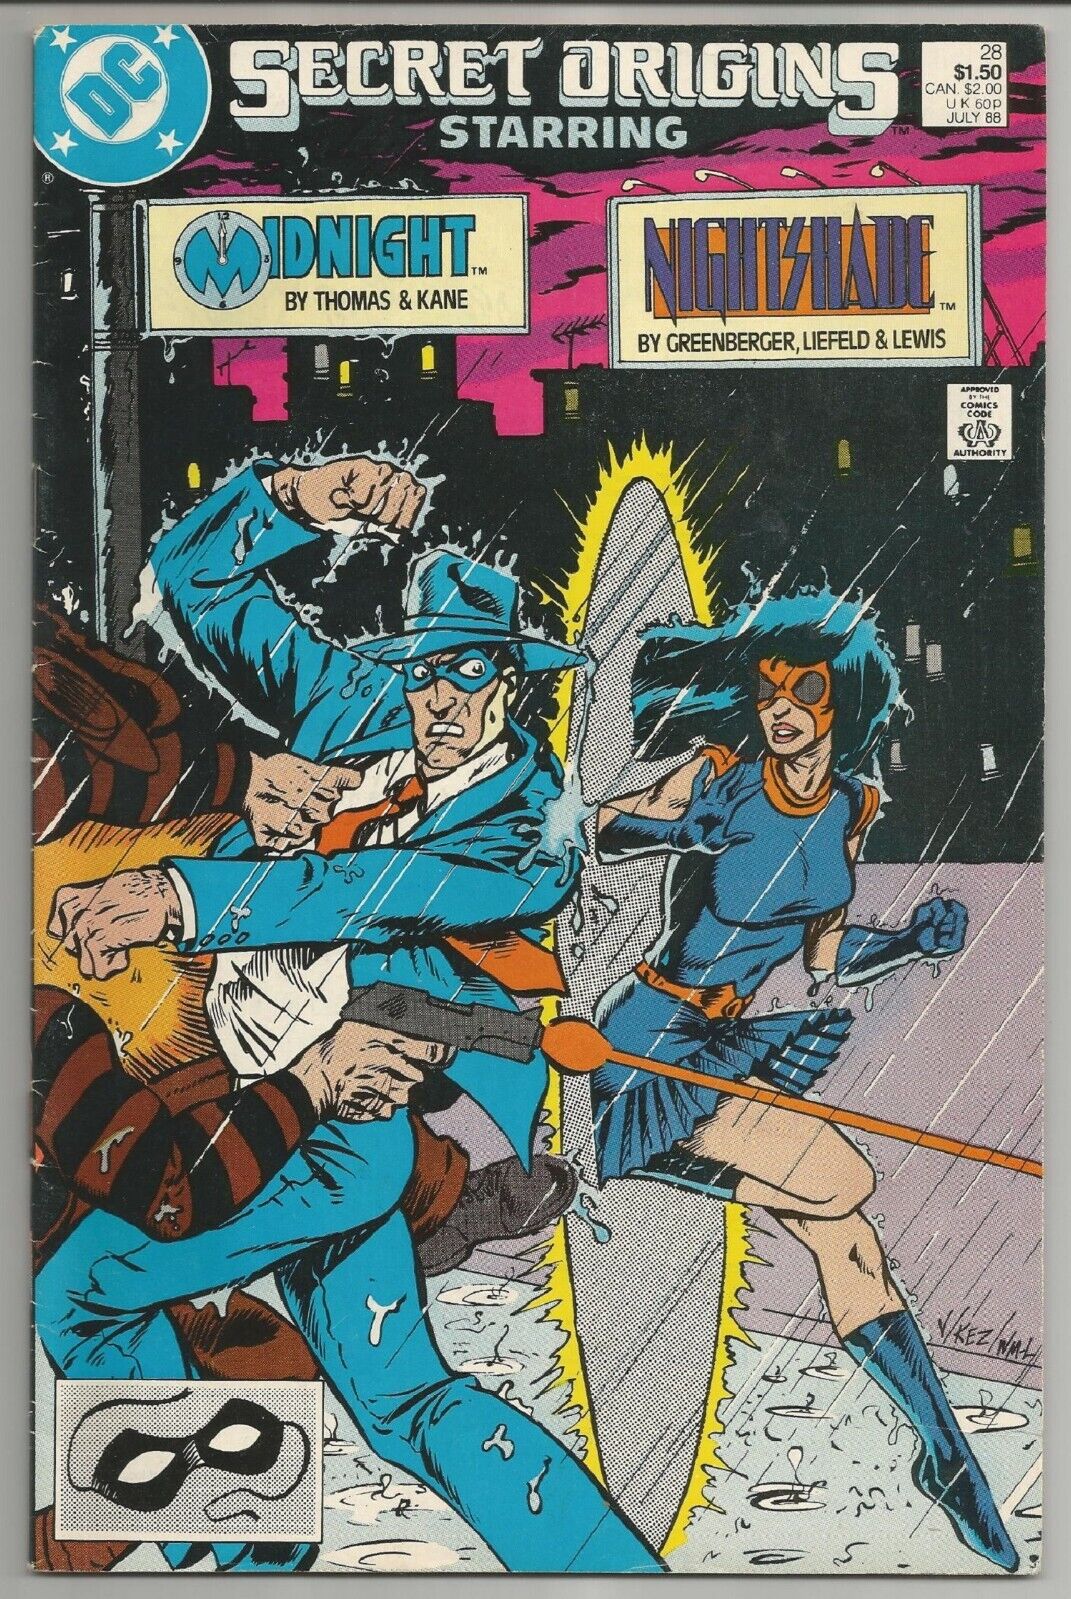 Secret Origins 28, July 1988 (DC Comics)